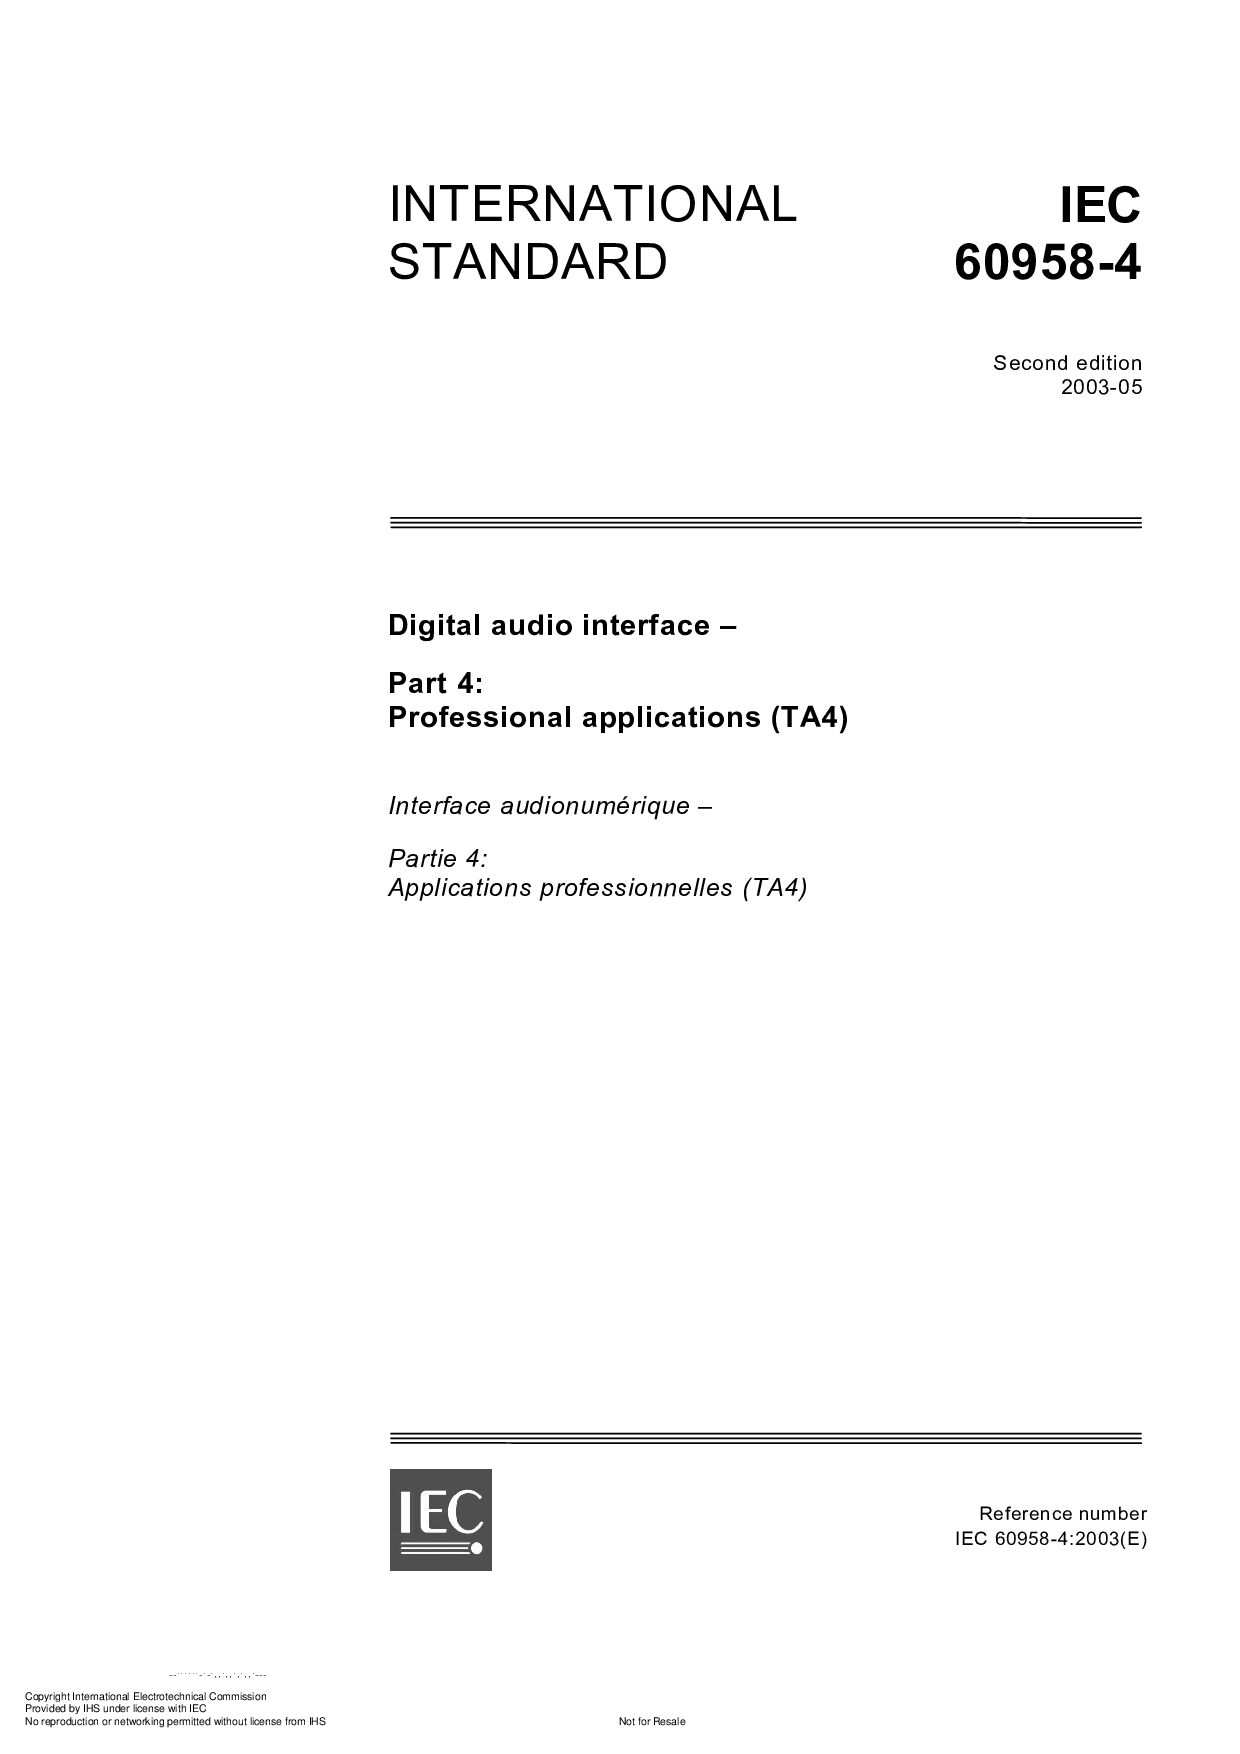 IEC 60958-4:2003